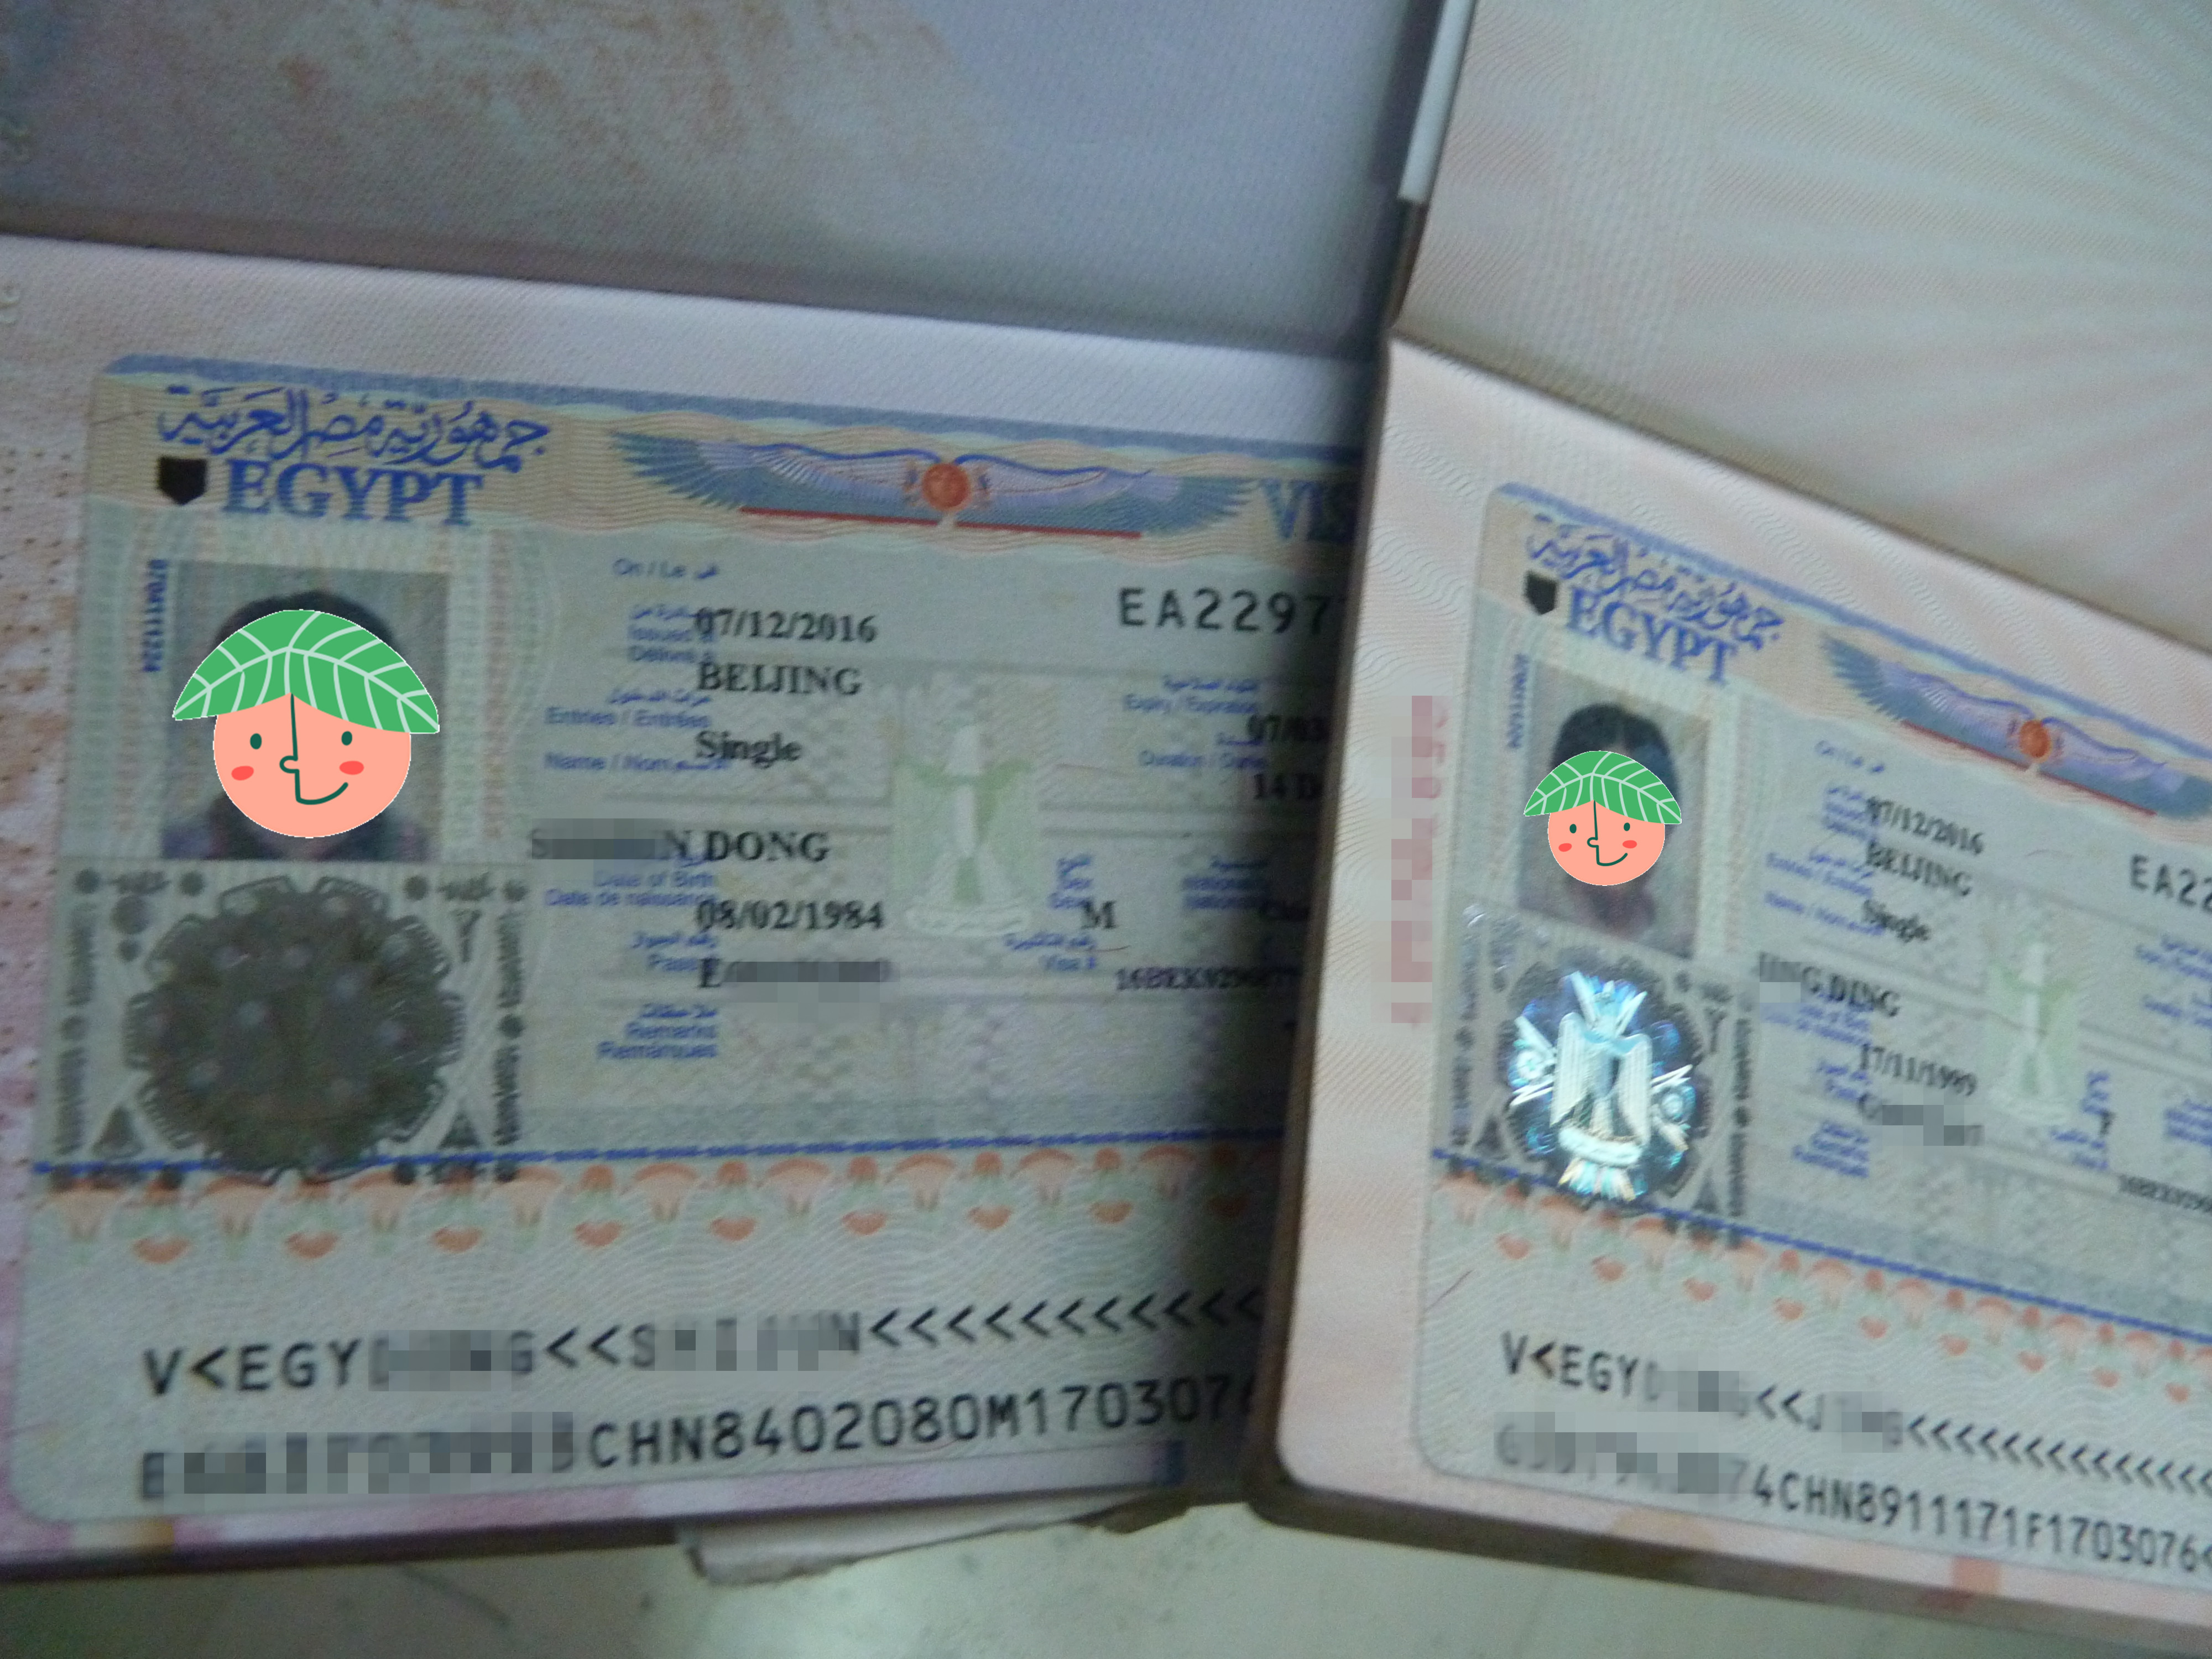 韩国五年多次简化：护照+照片+身份证，满足条件即可申请！ - 知乎